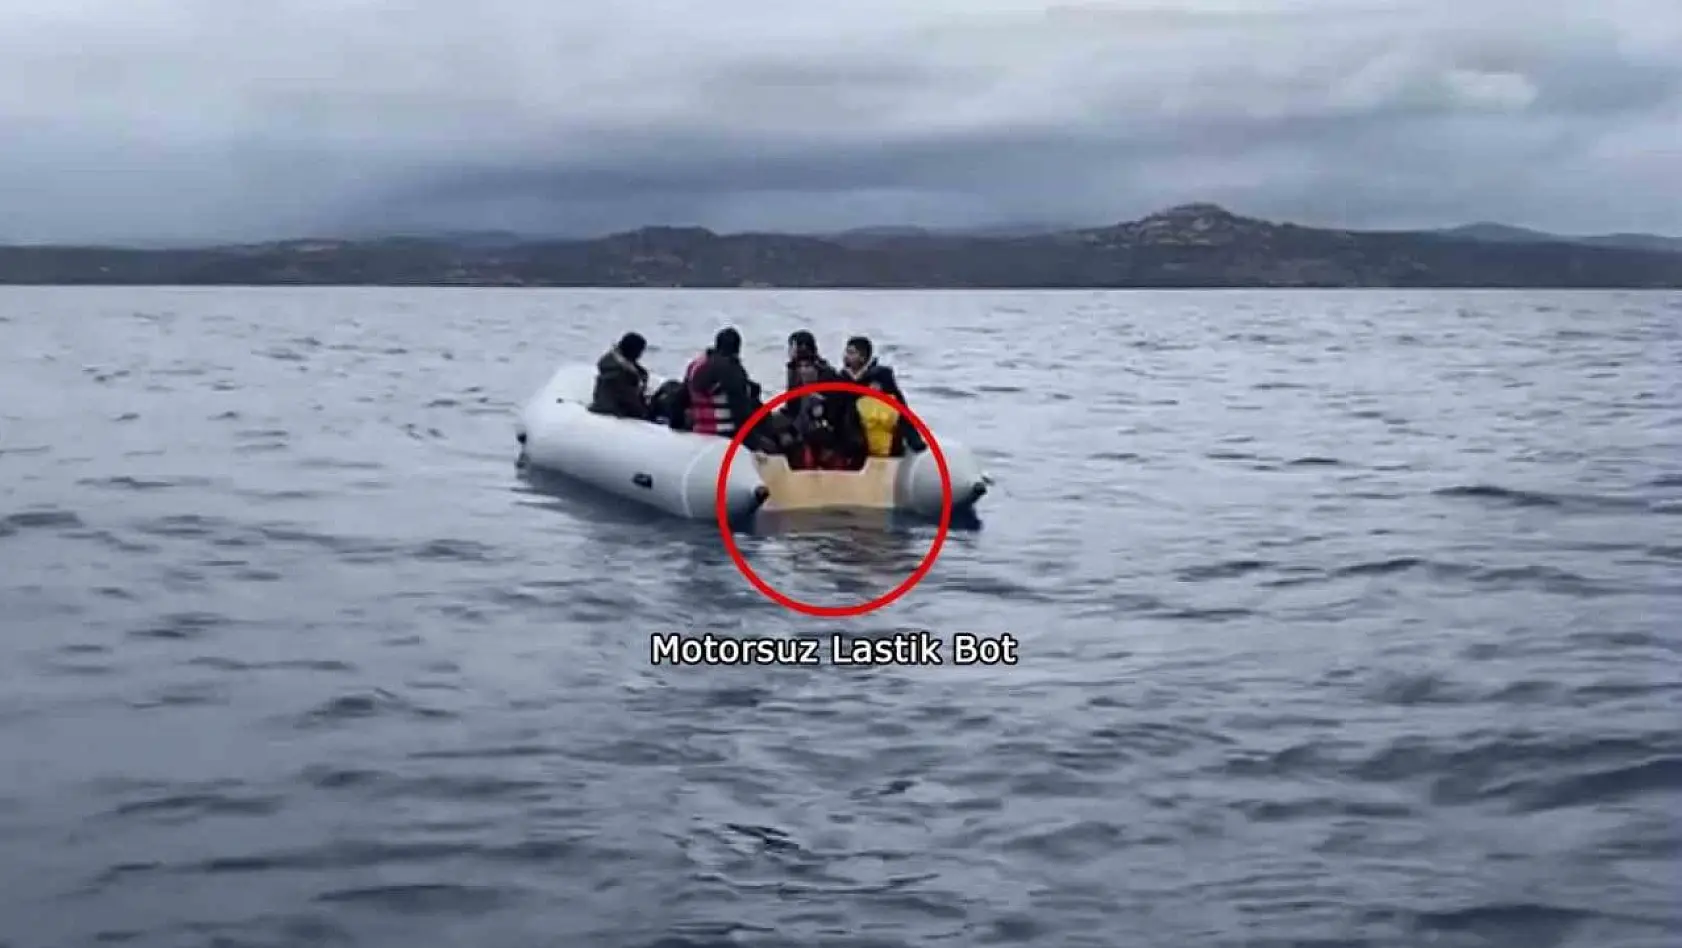 Yunanistan lastik botun motorunu söküp, göçmenleri ölüme terk ediyor